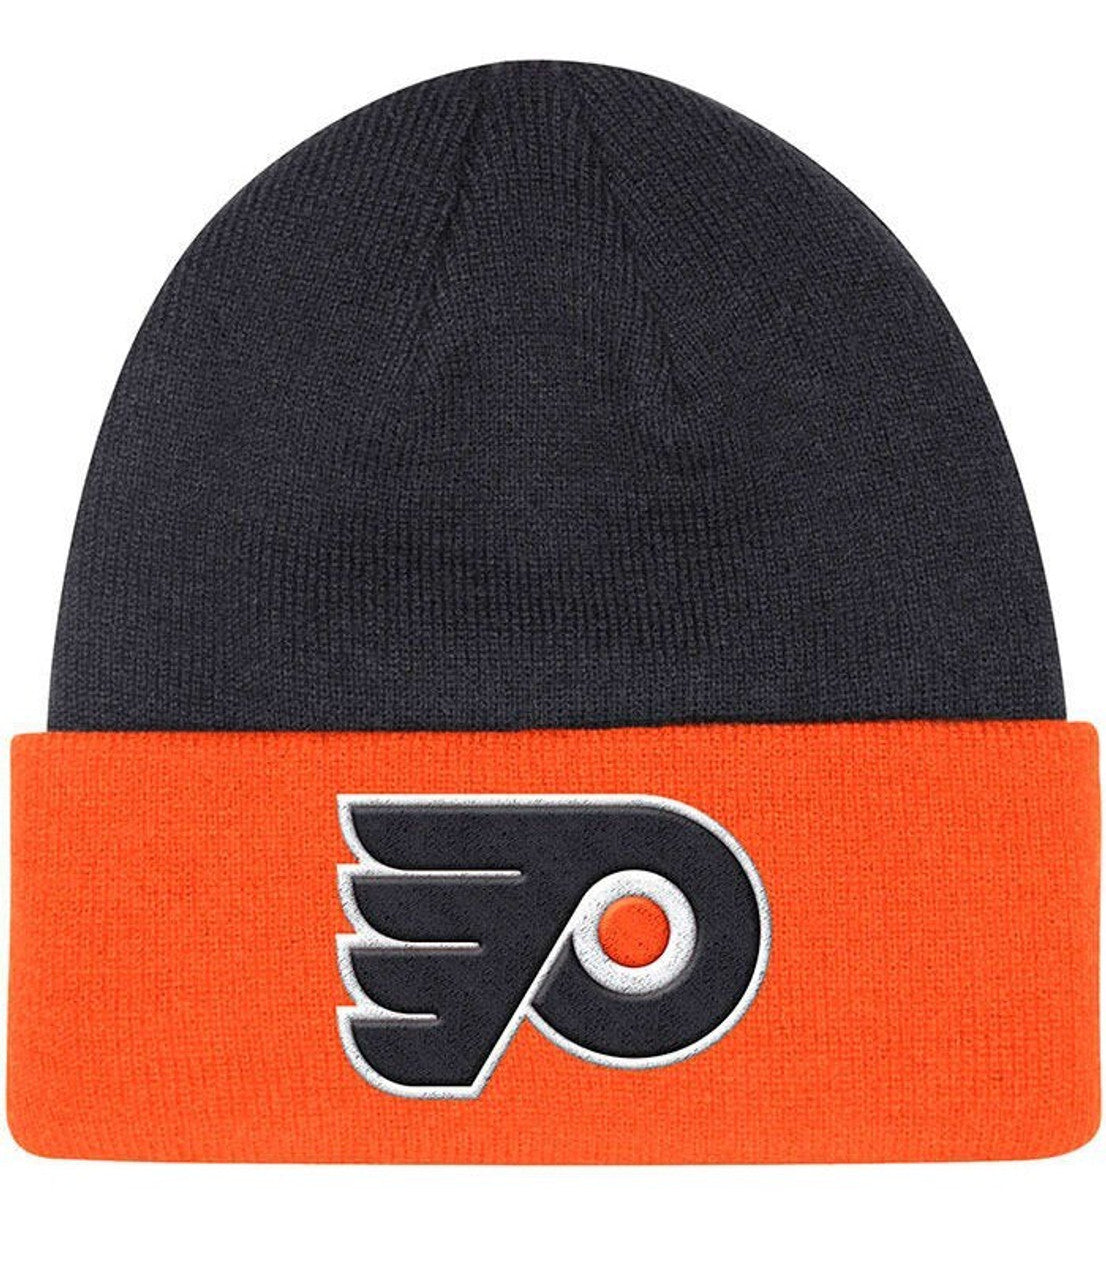 Philadelphia Flyers Sports Cuffed Knit Cap